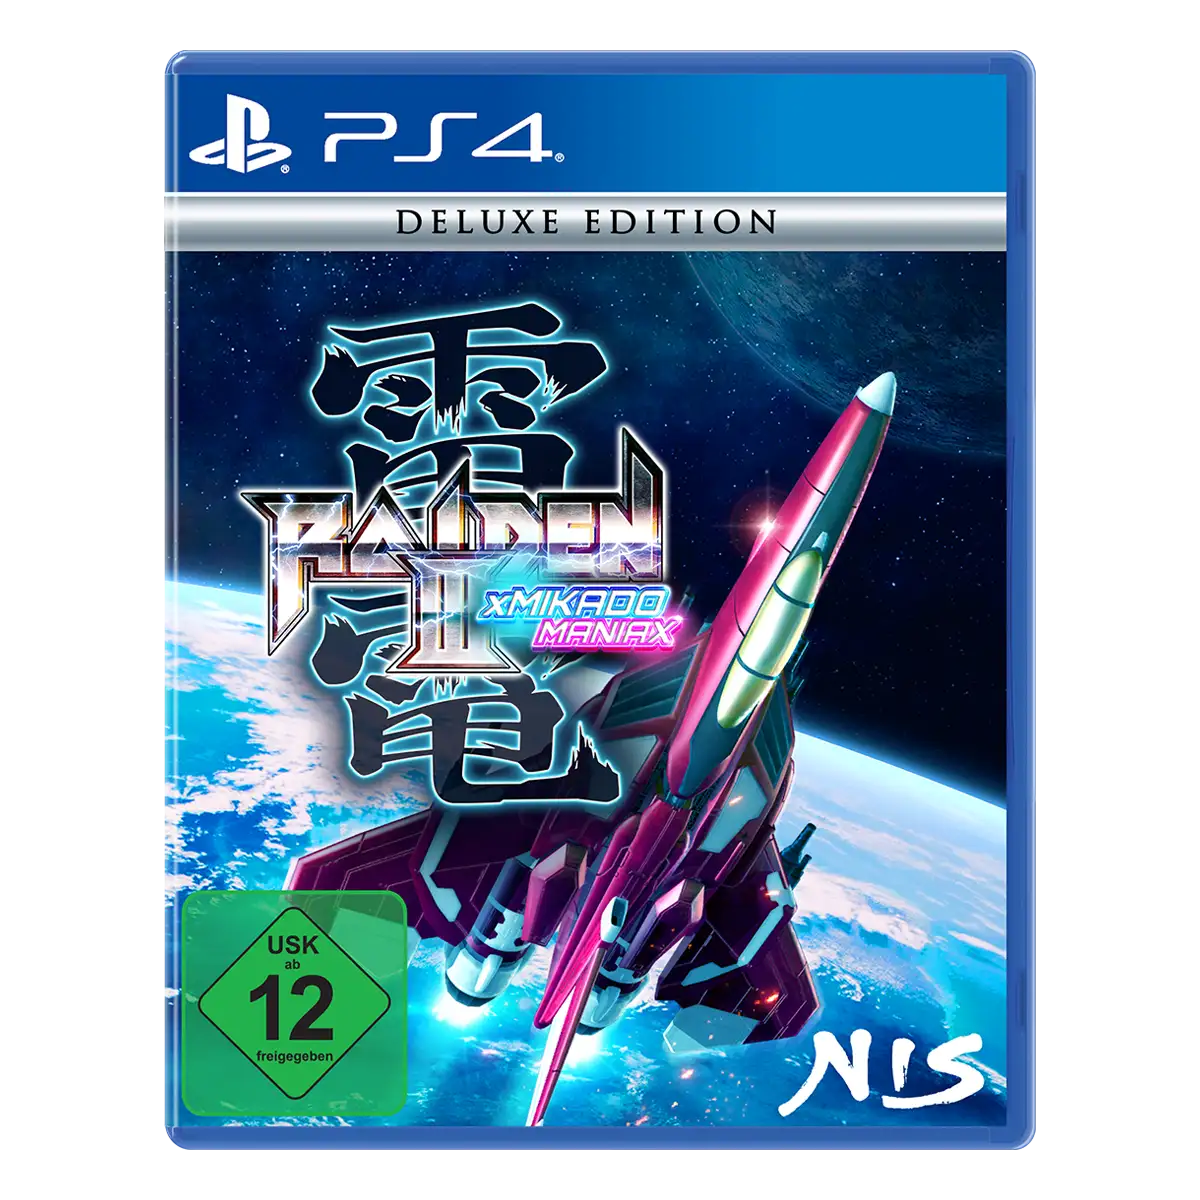 Raiden III x MIKADO MANIAX Deluxe Edition (PS4)